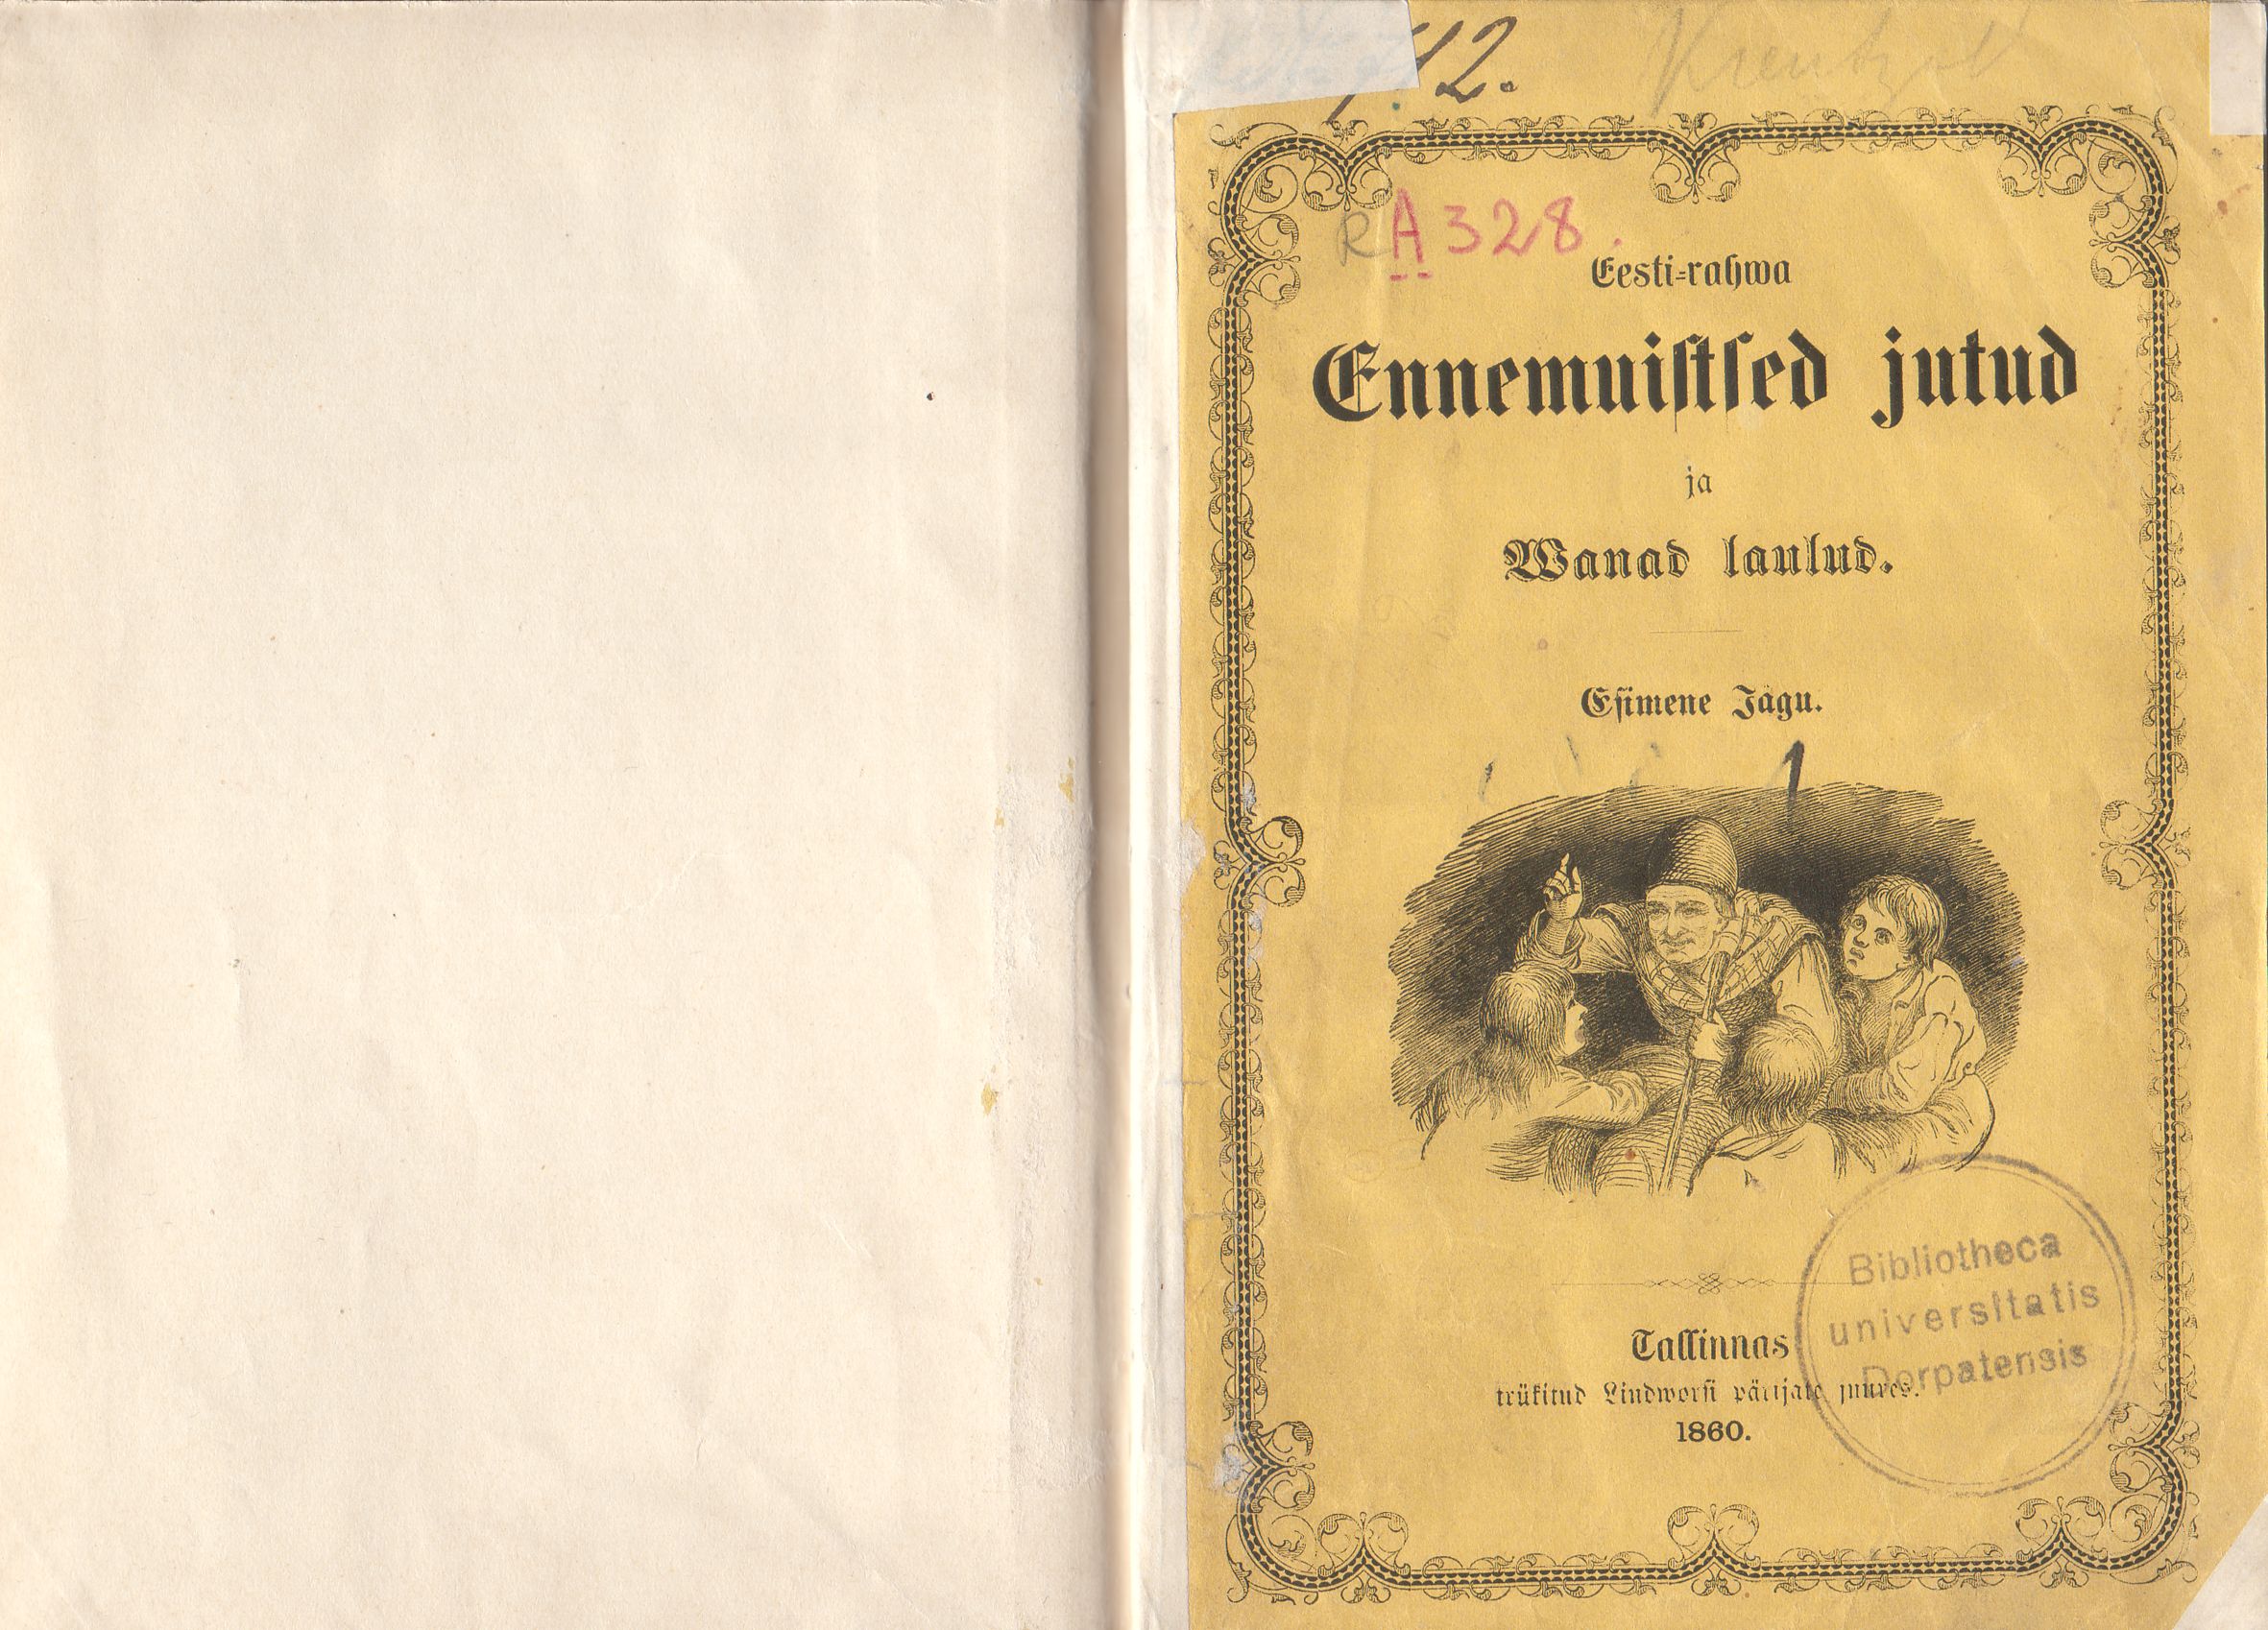 Eesti-rahwa Ennemuistsed jutud ja wanad laulud [1] (1860) | 2. Vorderdeckel